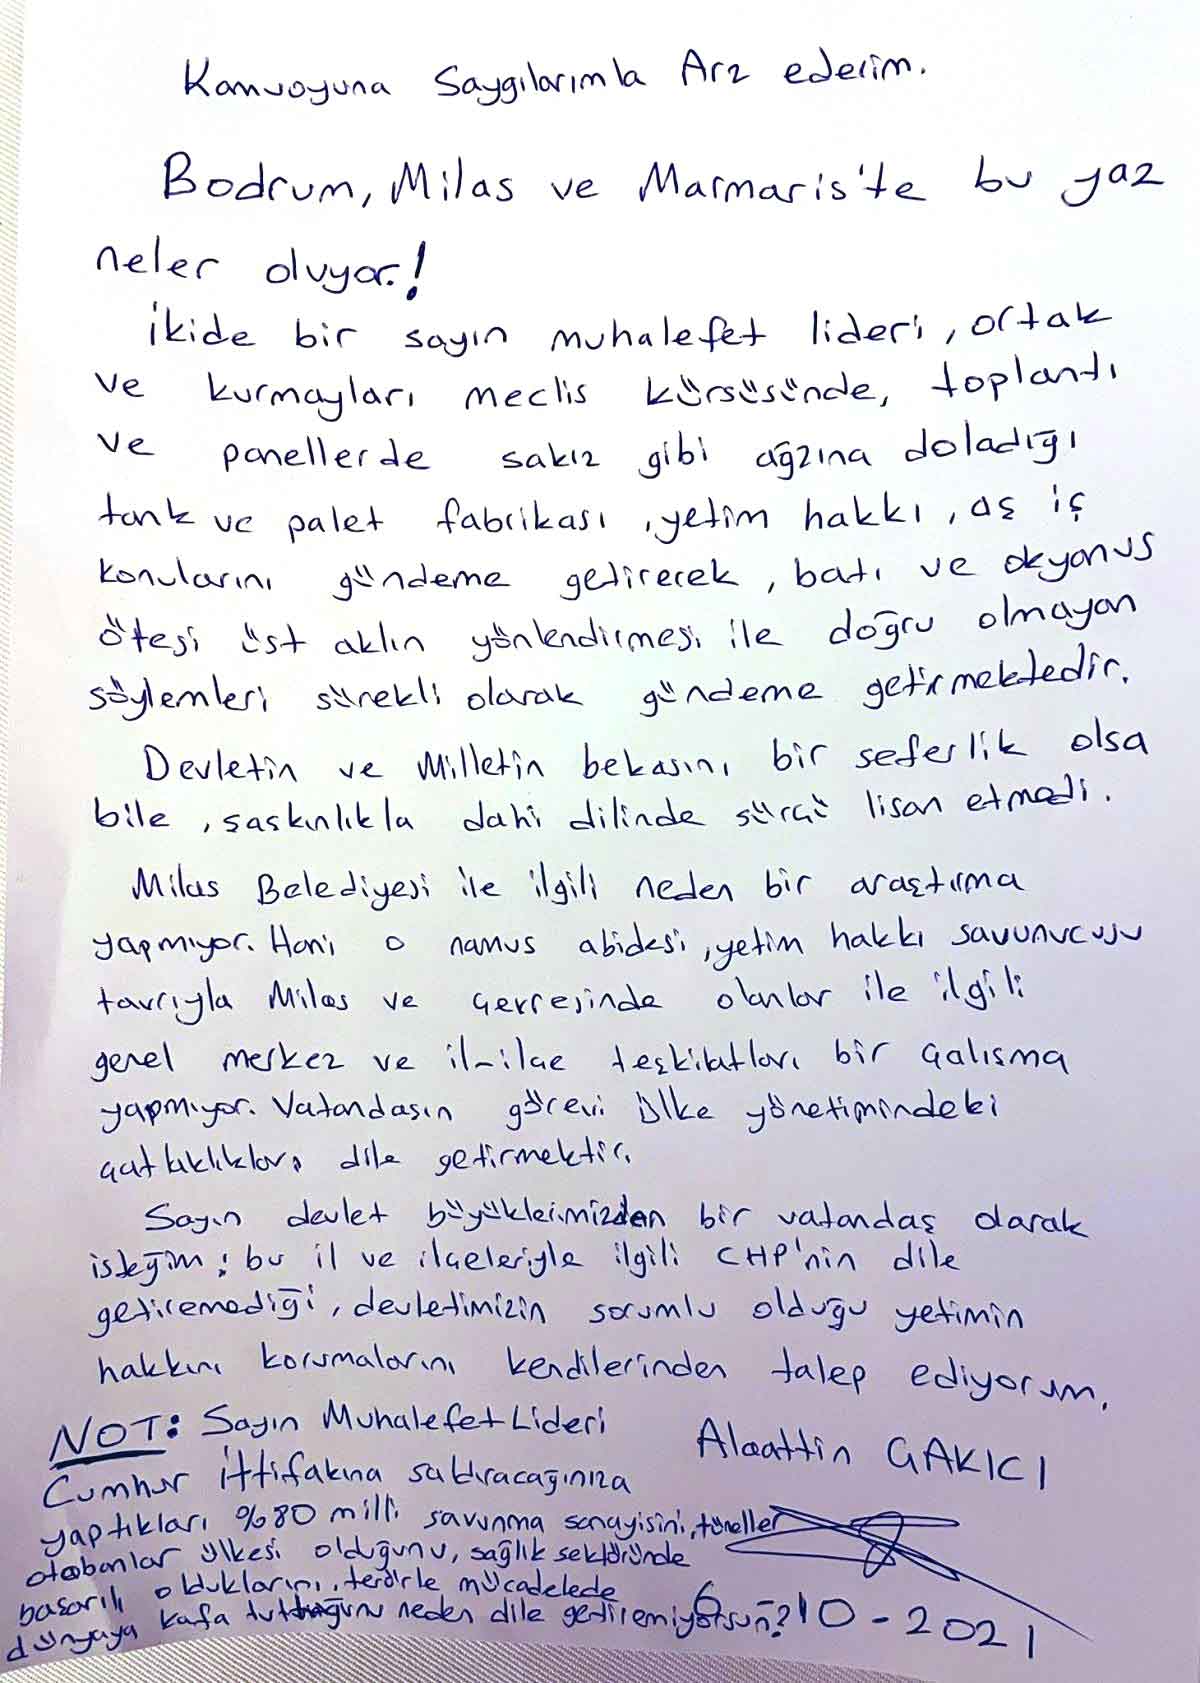 Alaattin Çakıcı mektup paylaştı, iktidara seslendi: "CHP'nin yapamadığını..."